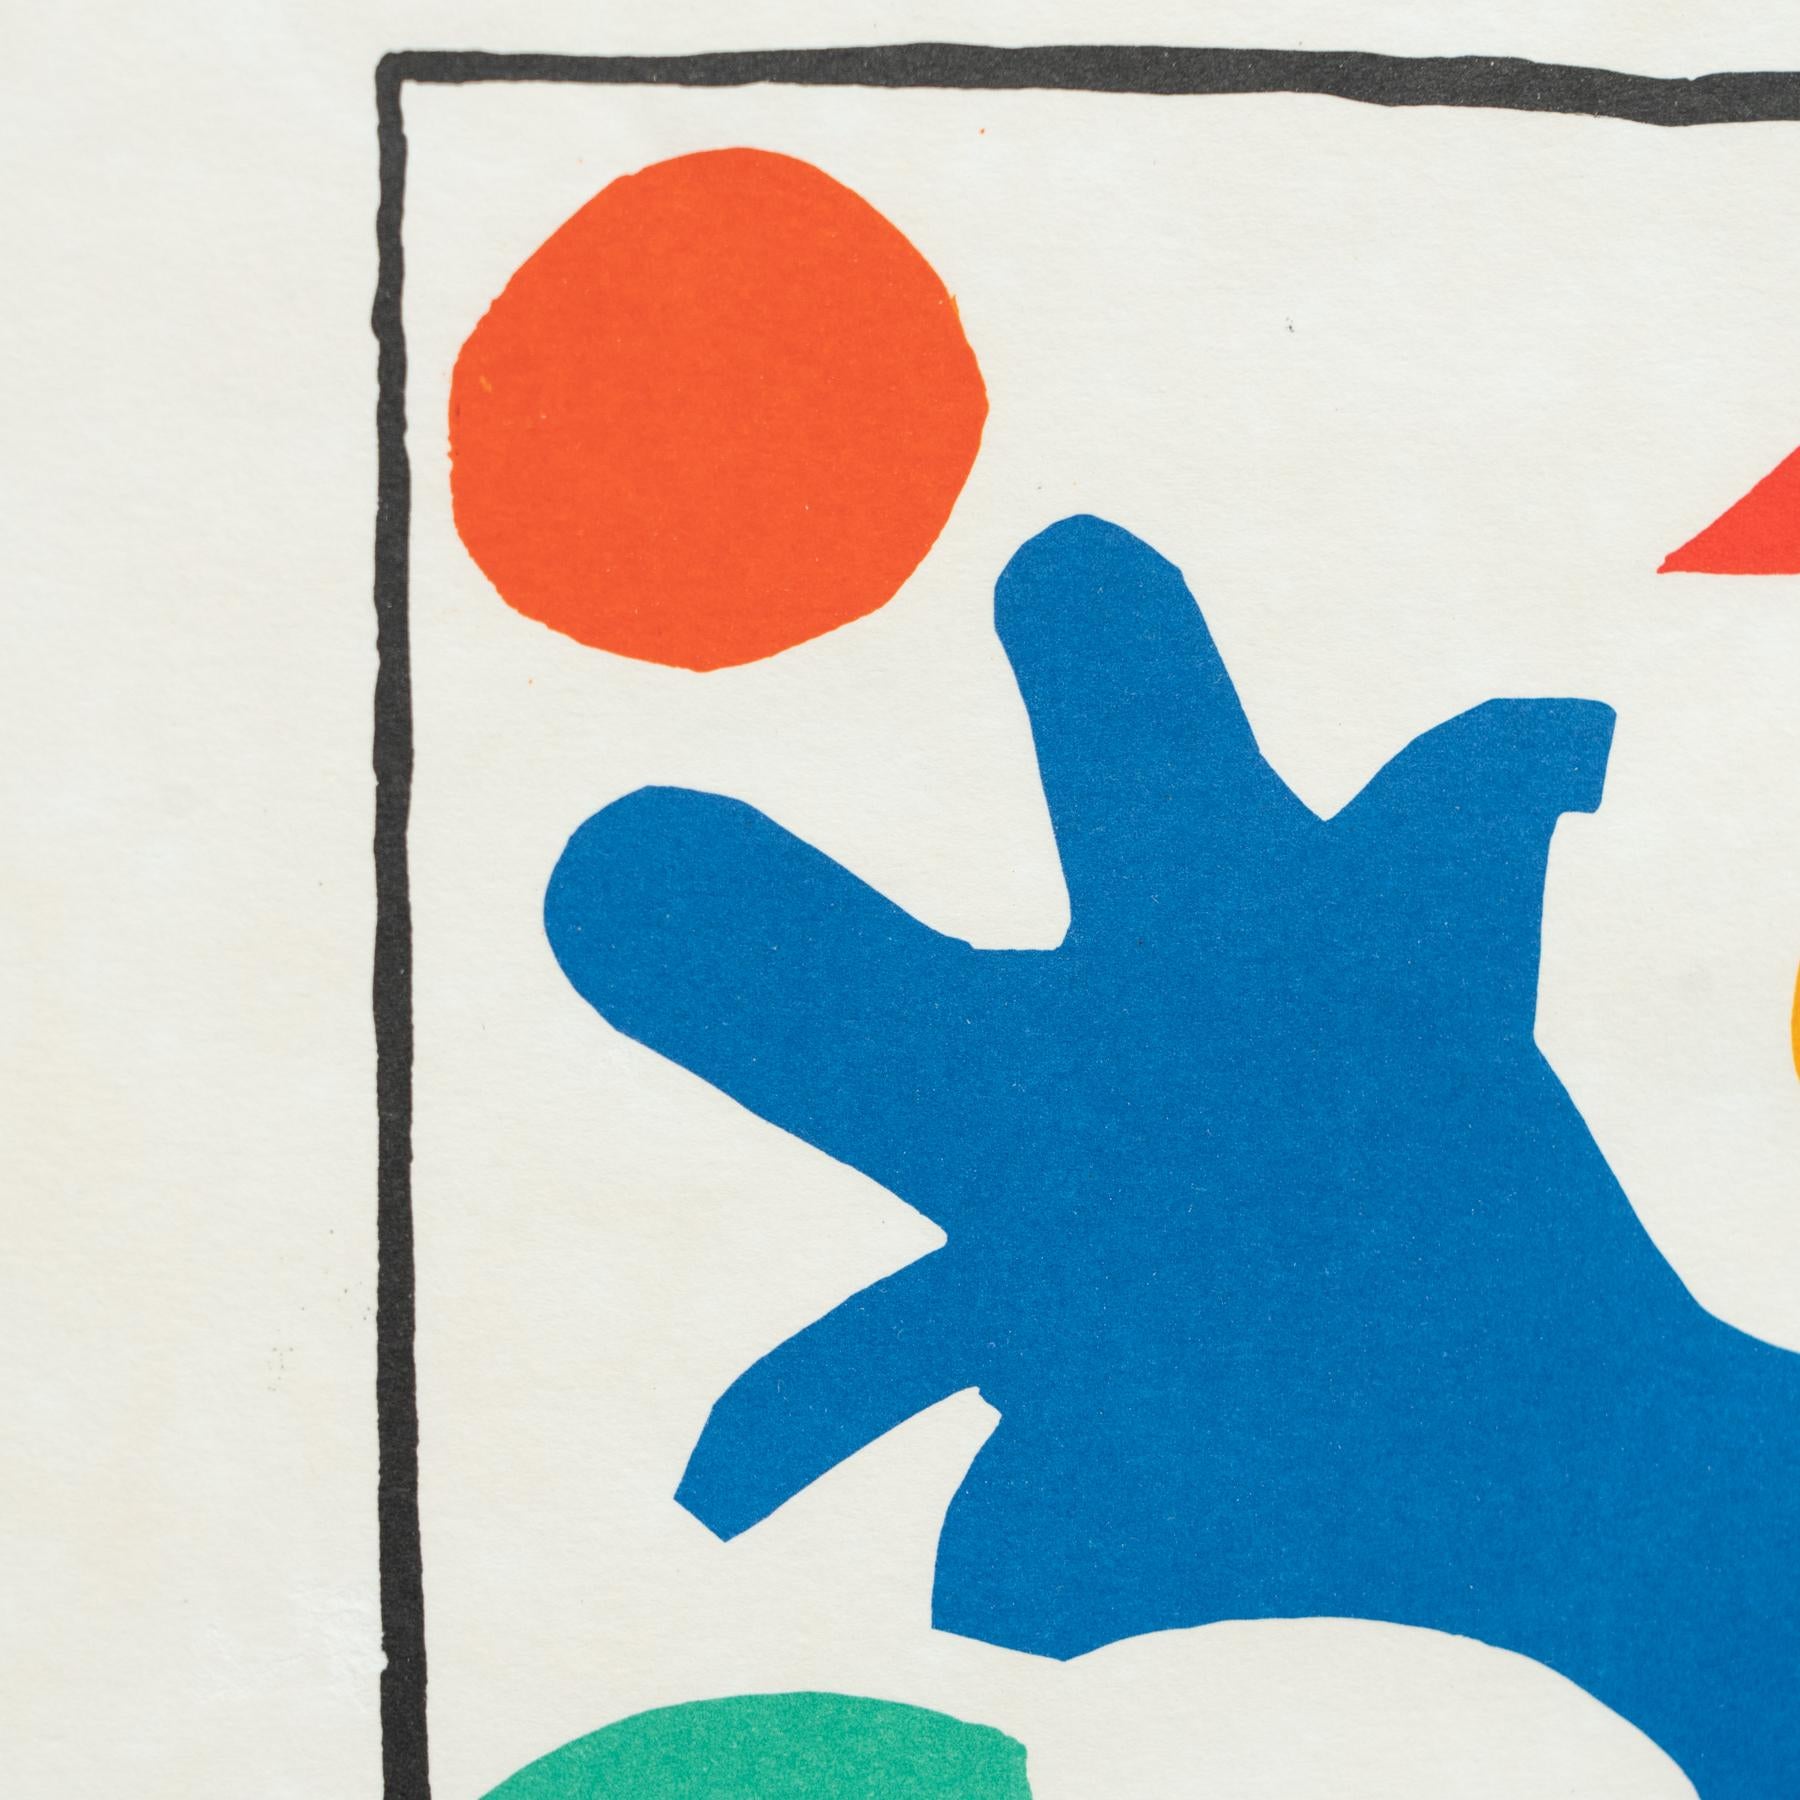 Paper Henri Matisse 'Coquelicots' Lithograph', circa 1954